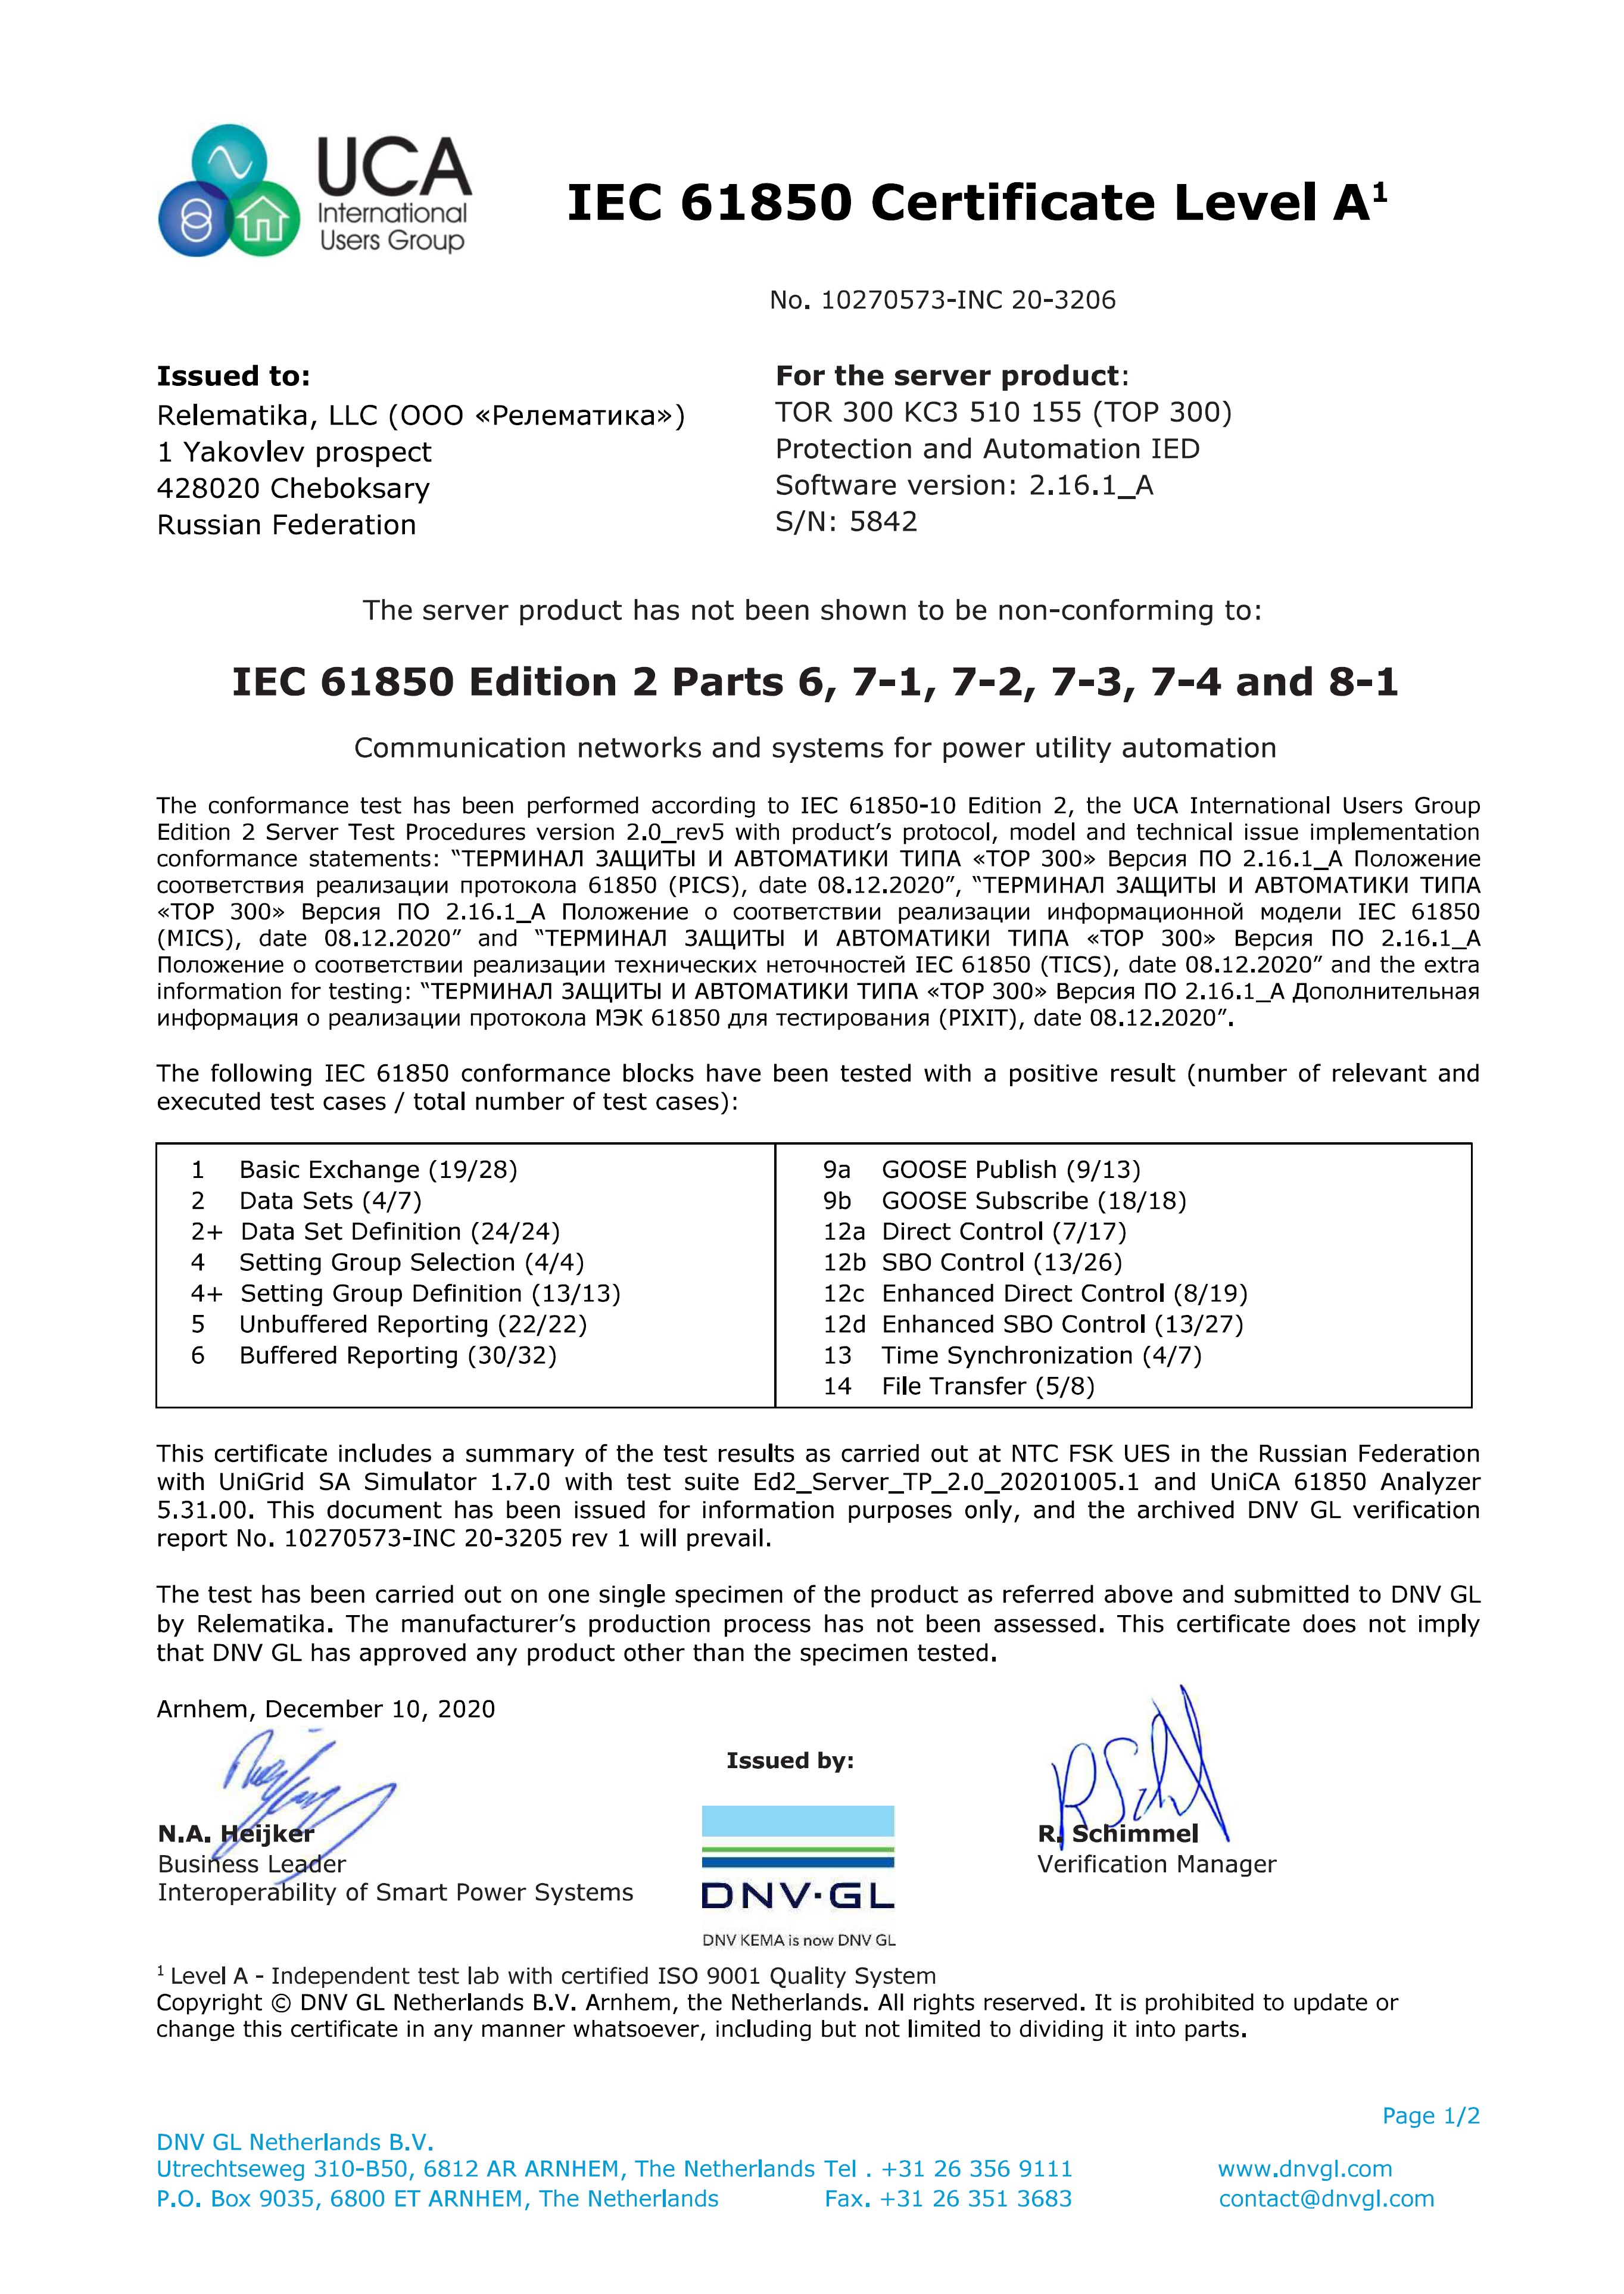 IEC 61850 Certificate Level A - TOR 300